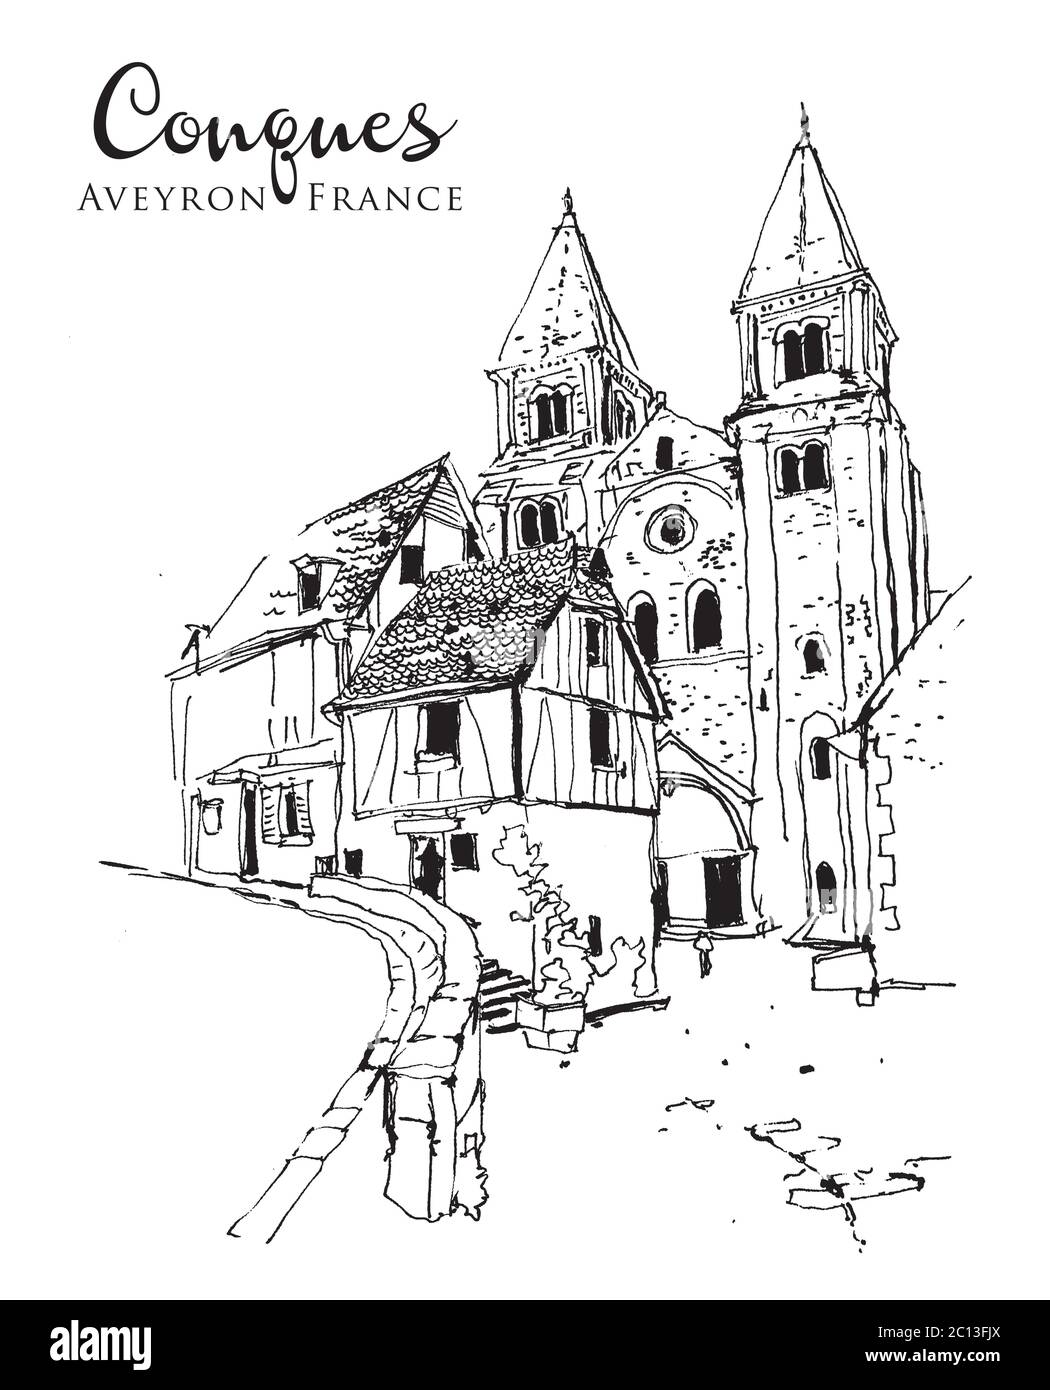 Disegno disegno illustrazione di una strada con vecchi edifici nel villaggio di Conques in Aveyron, Francia Illustrazione Vettoriale